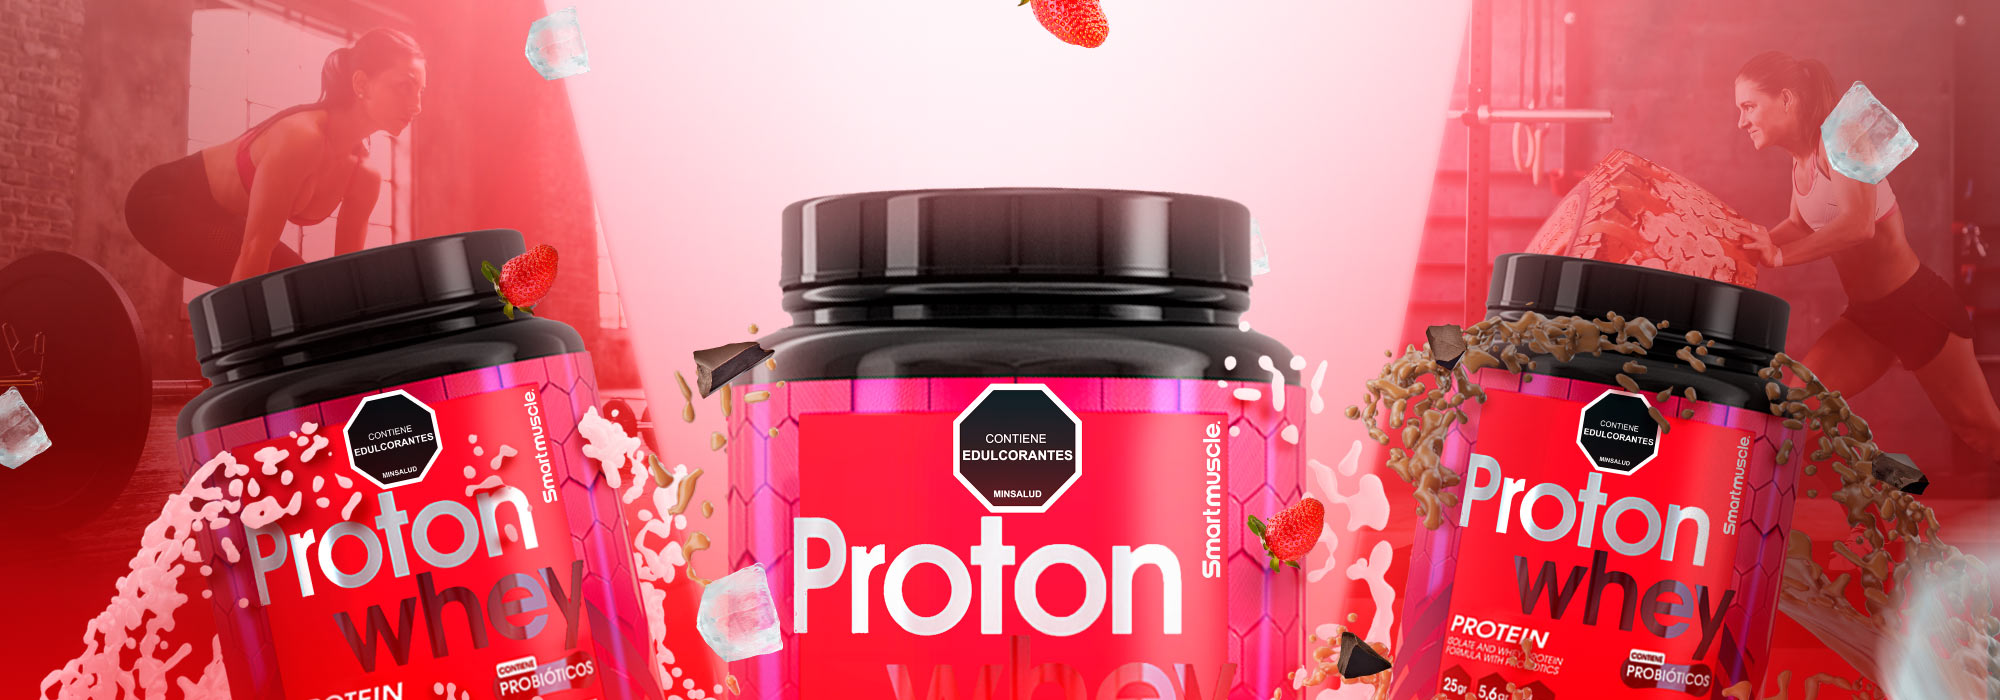 banner-protein